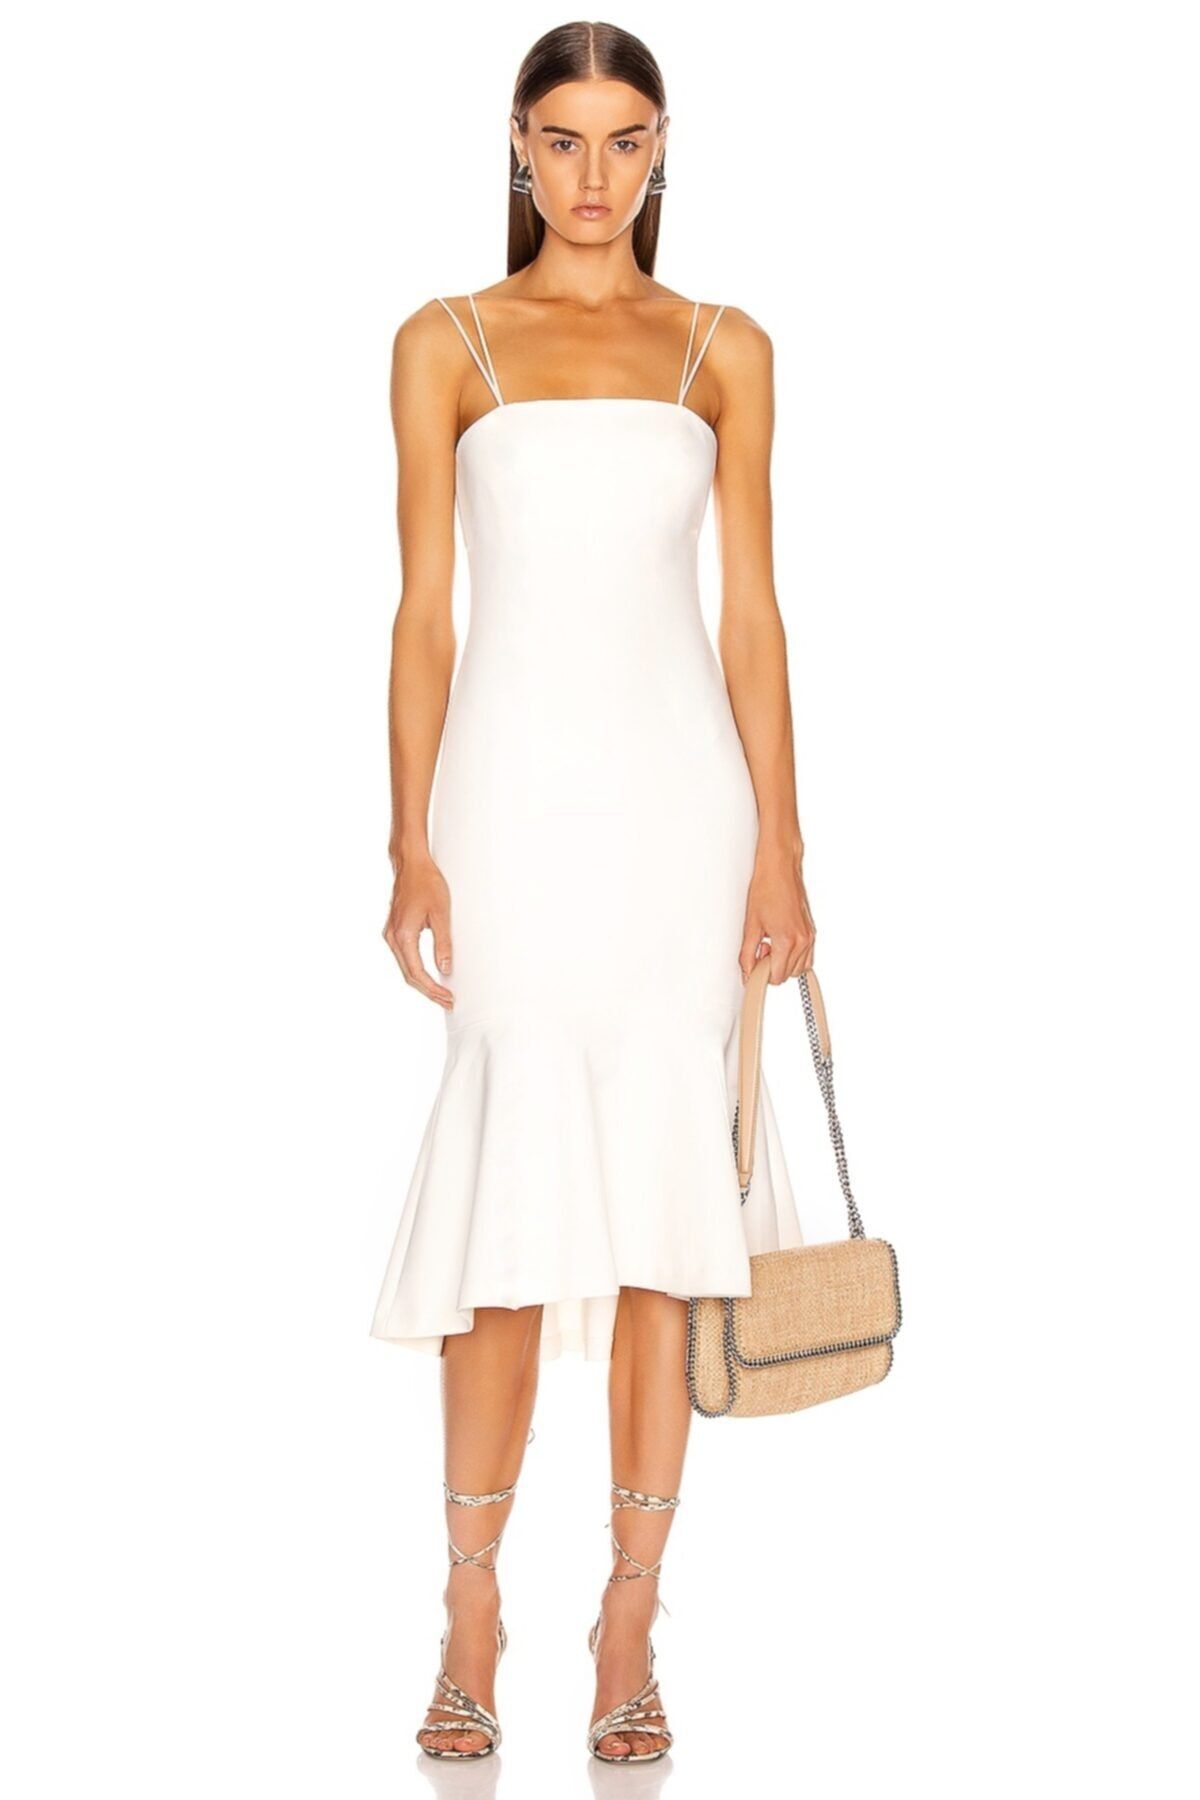 By Umut Design Kadın Volanlı Straplez Kesim Spagetti Askılı Beyaz Elbise 4574096